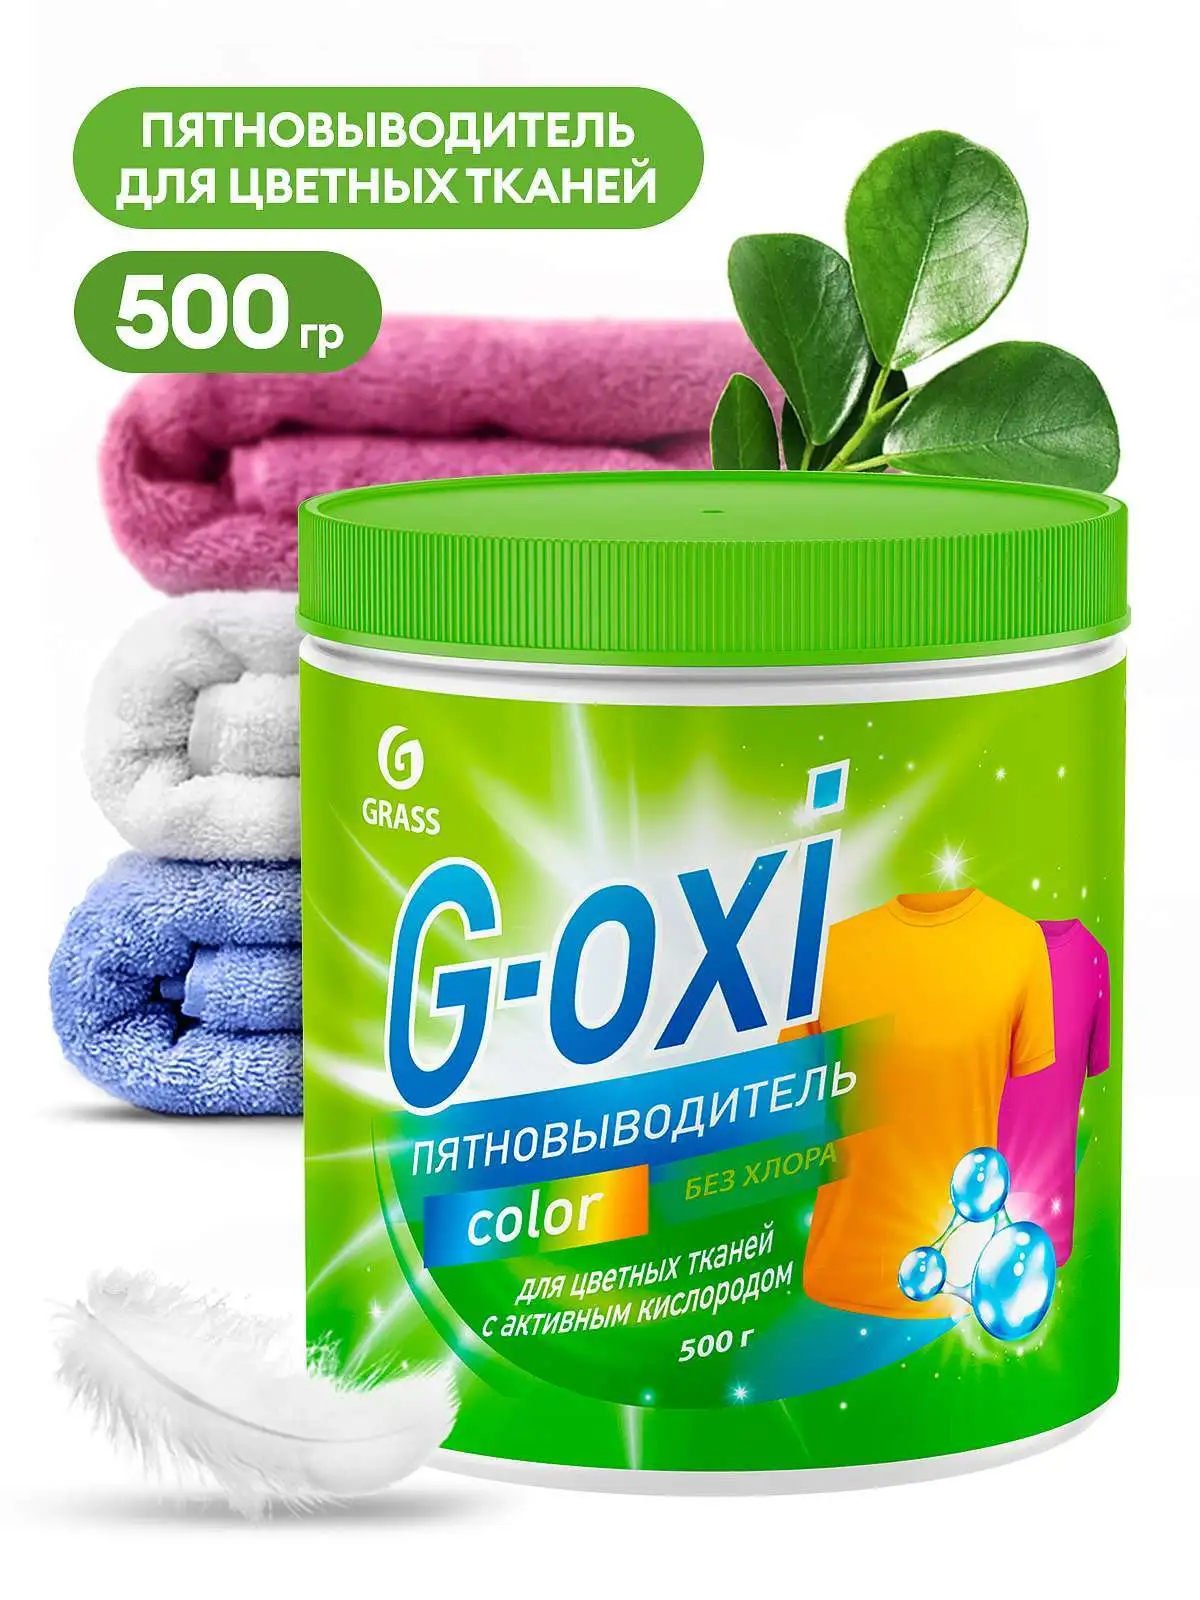 Пятновыводитель "G-oxi" для цветных вещей с активным кислородом 500г GRASS